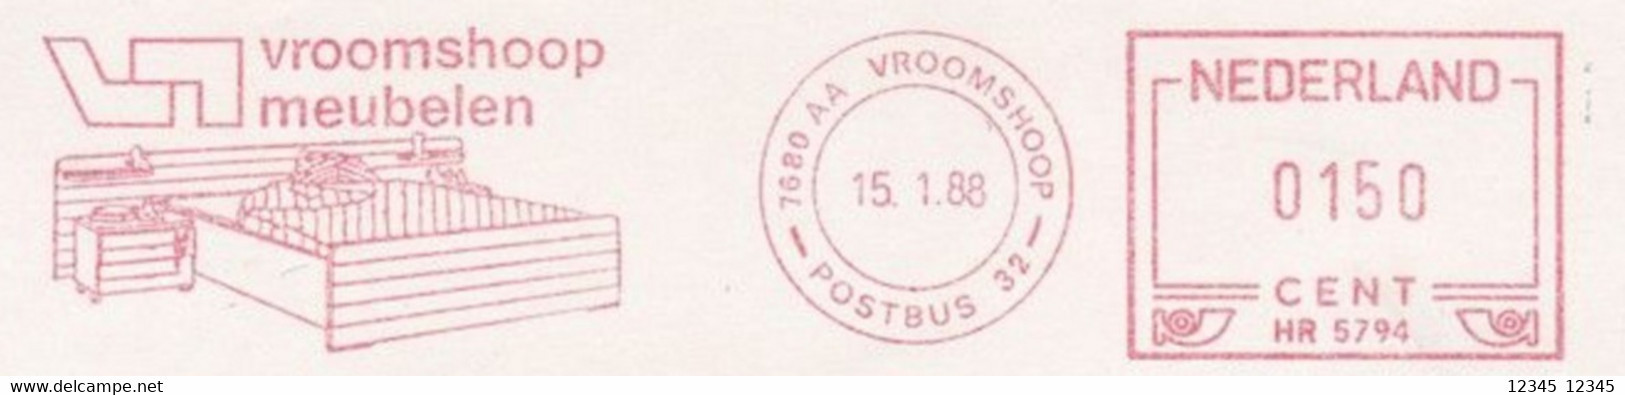 Nederland 1988, Vroomshoop Meubelen, Vroomshoop Furniture - Máquinas Franqueo (EMA)